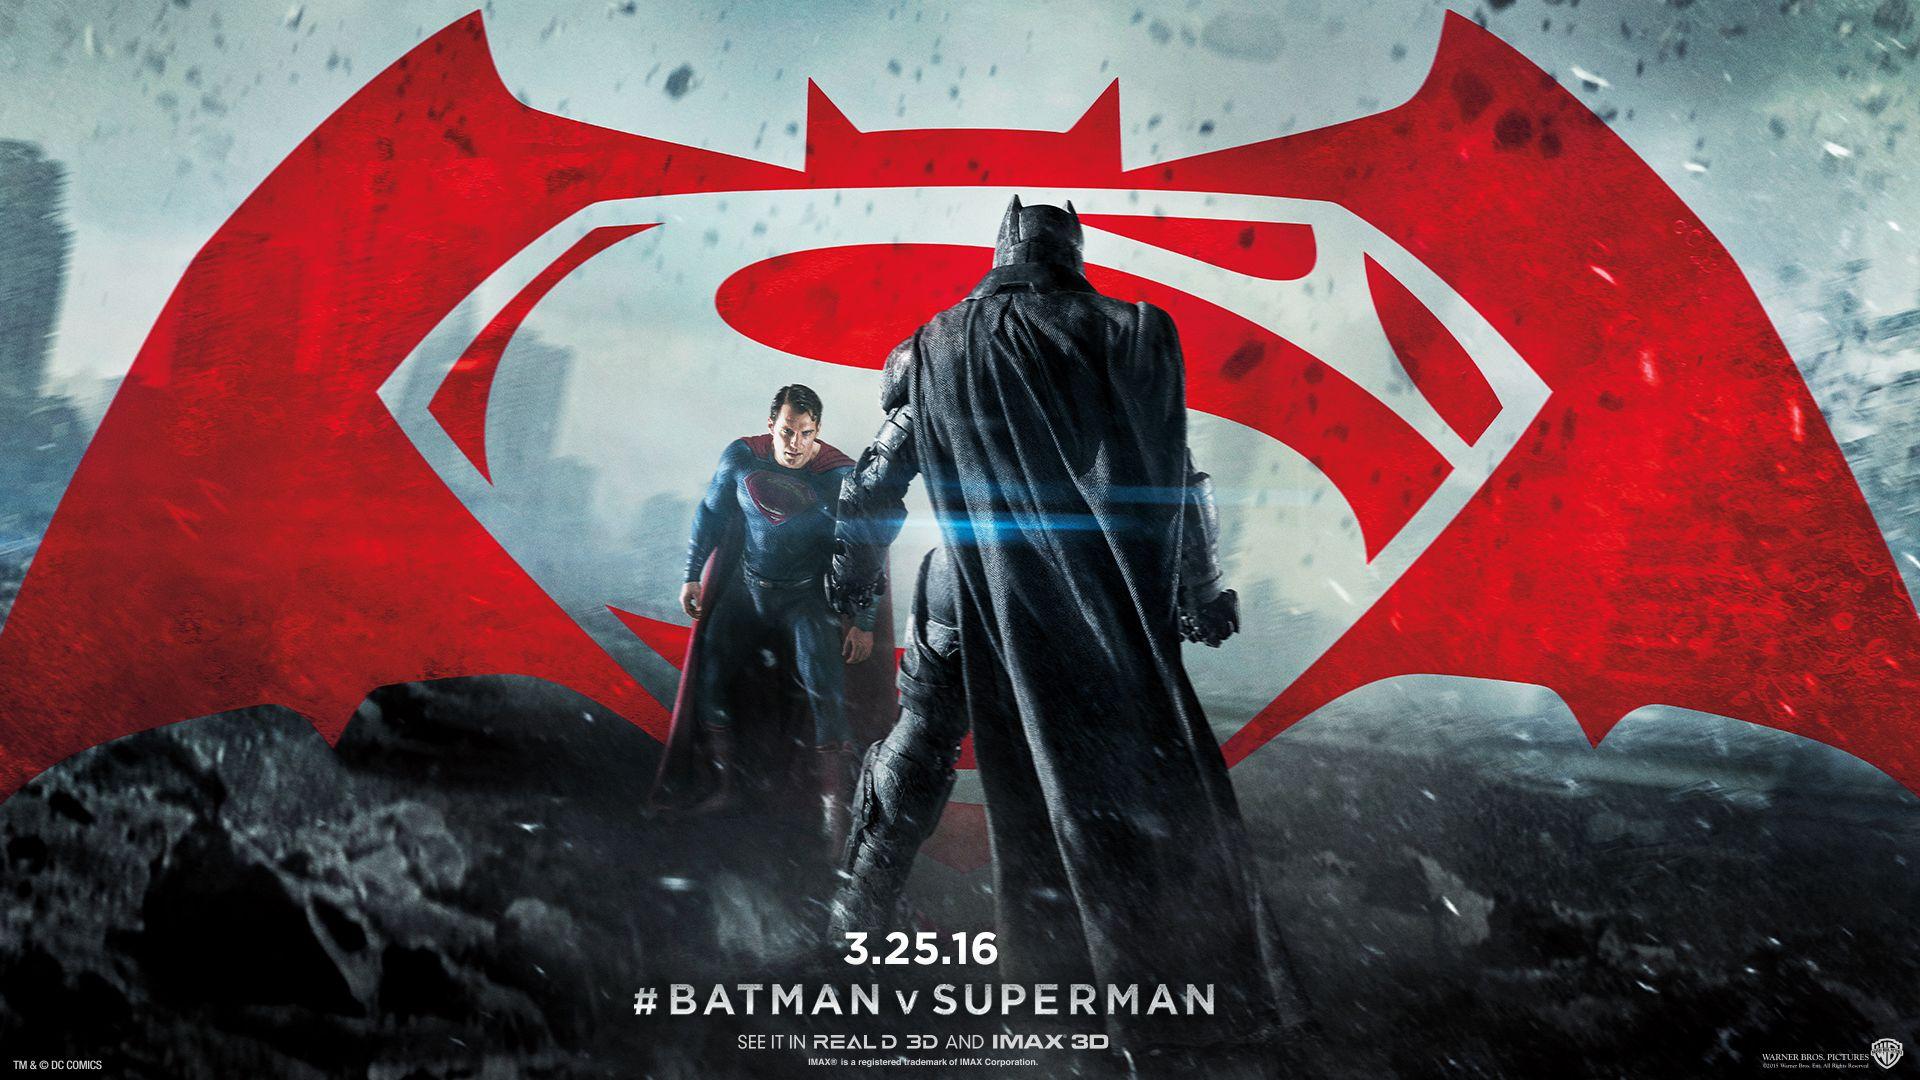 Batman V Superman Wallpapers - Top Free Batman V Superman Backgrounds ...